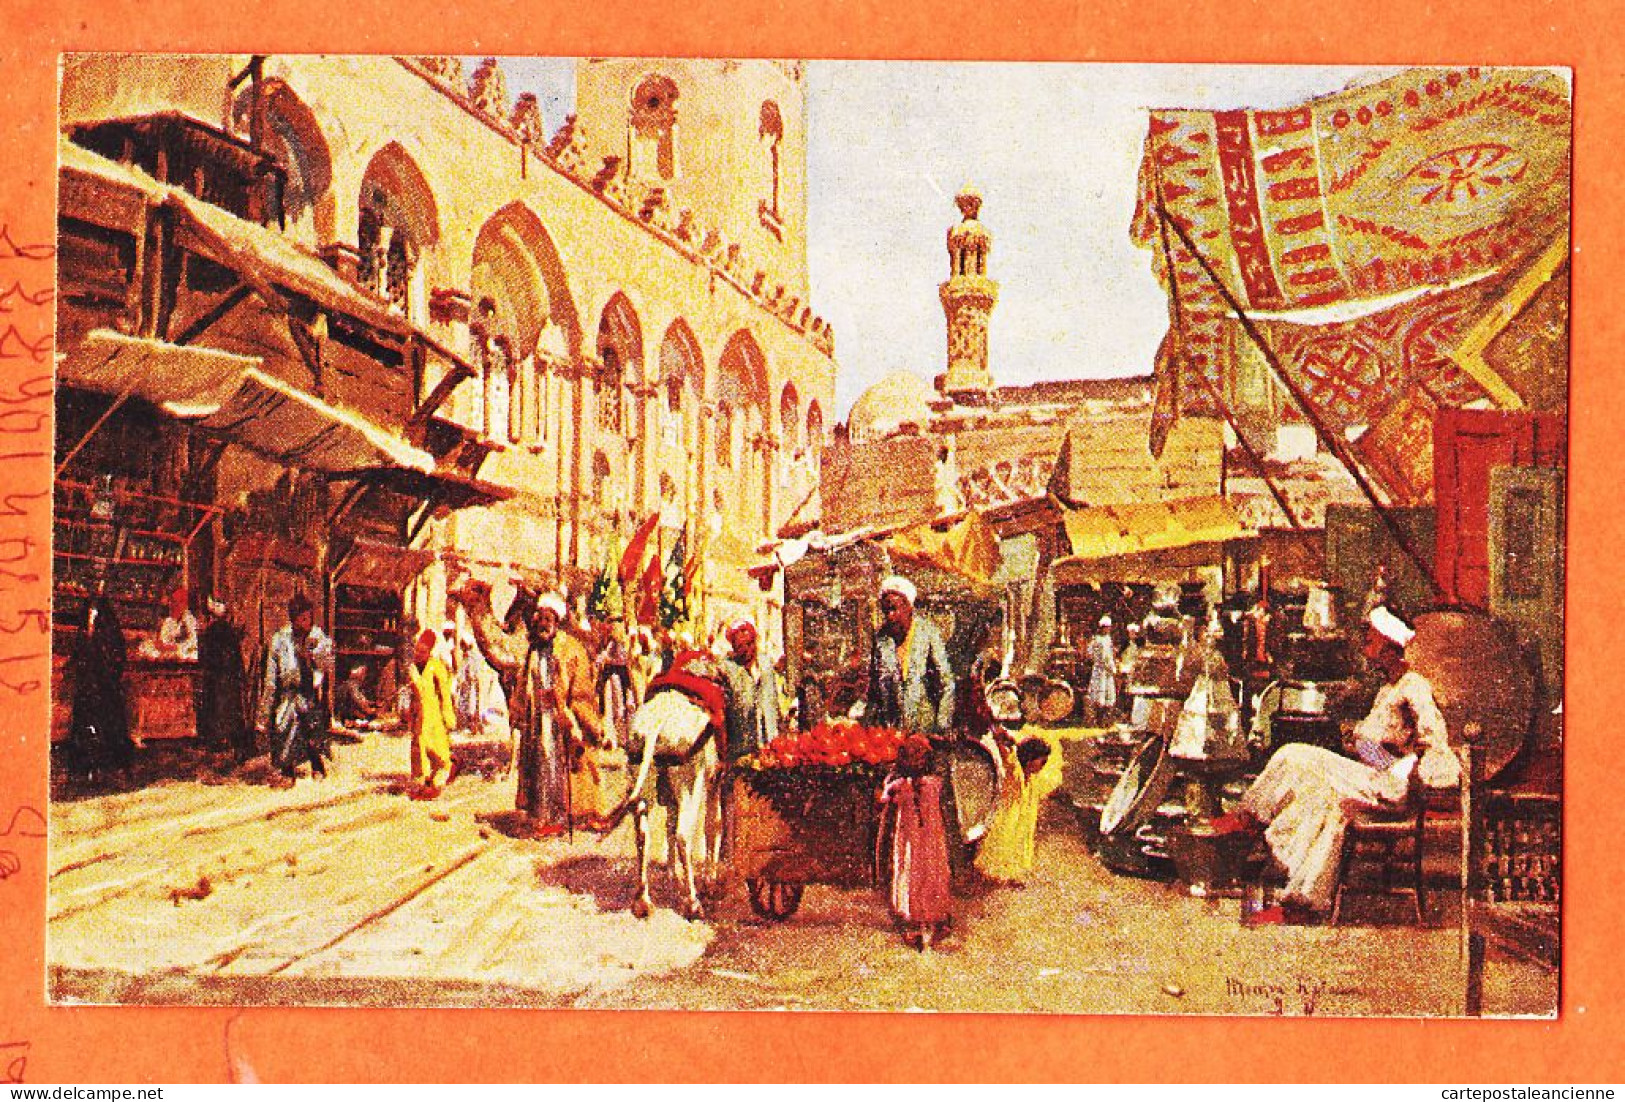 09971 / ⭐ LE CAIRE Marché Arabe Abords Ville CAIRO Arab Market Near Town 1913 à  Suzanne VEISBLAT ◉ LIVADAS COUTSICOS  - Le Caire